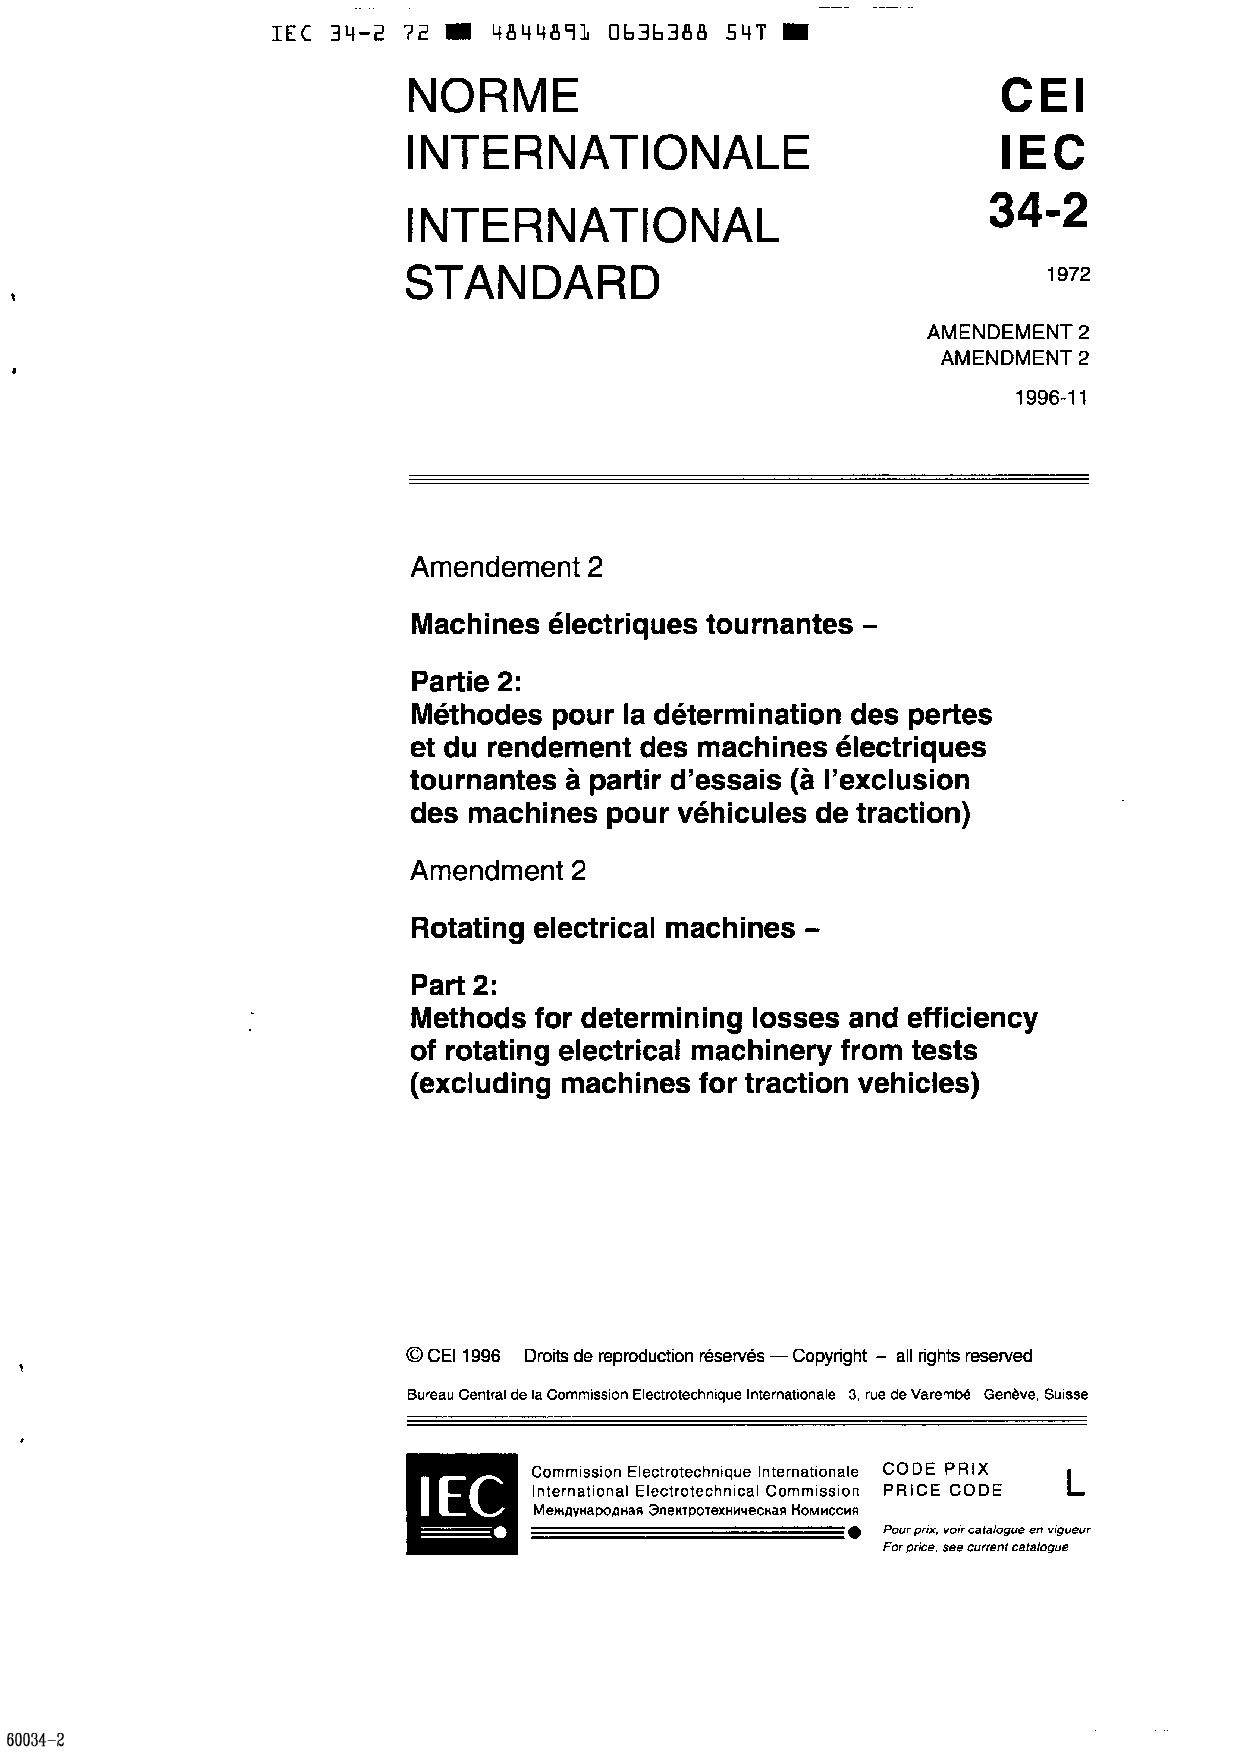 IEC 60034-2:1972/AMD2:1996